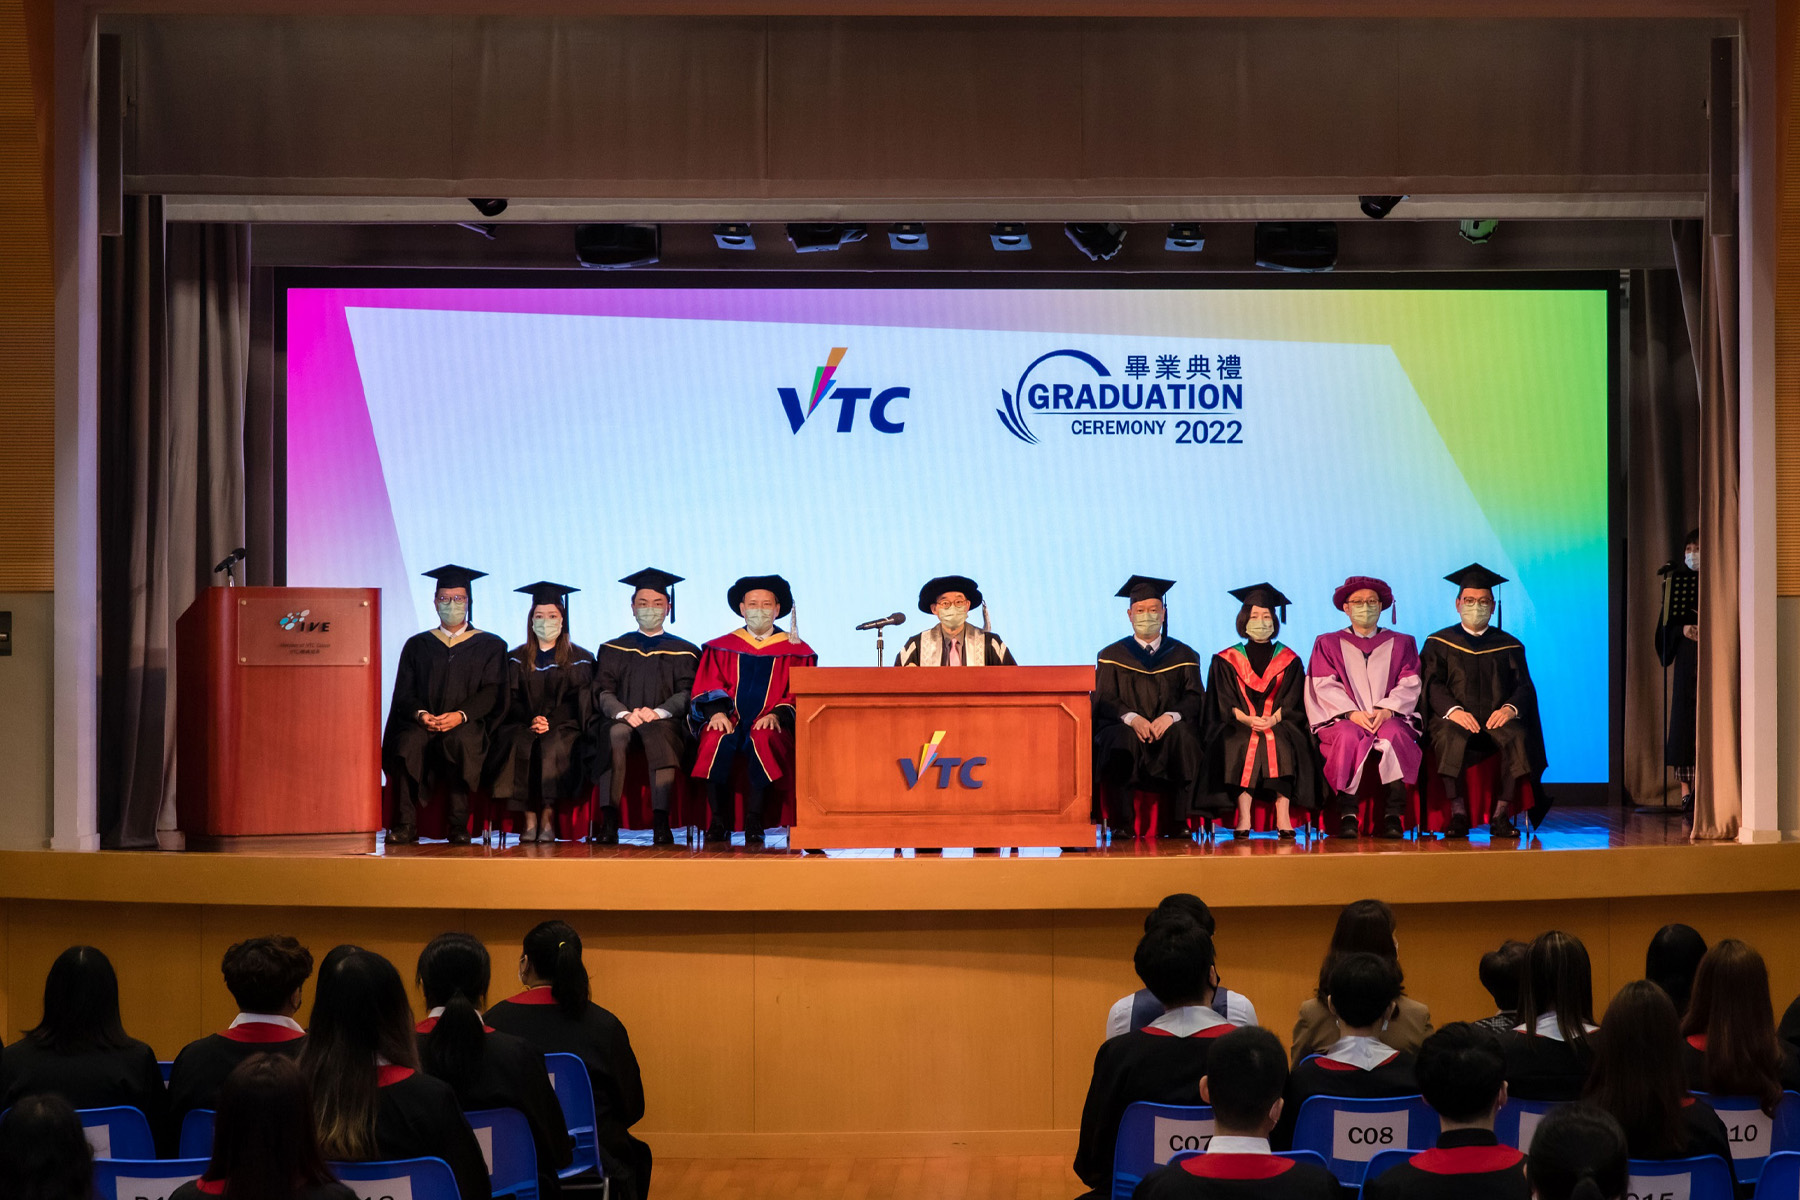 VTC院校舉行畢業典禮 逾1.6萬名畢業生獲頒授各級資歷 「伍達倫博士紀念傑出學生獎勵計劃」頒獎典禮同場舉行